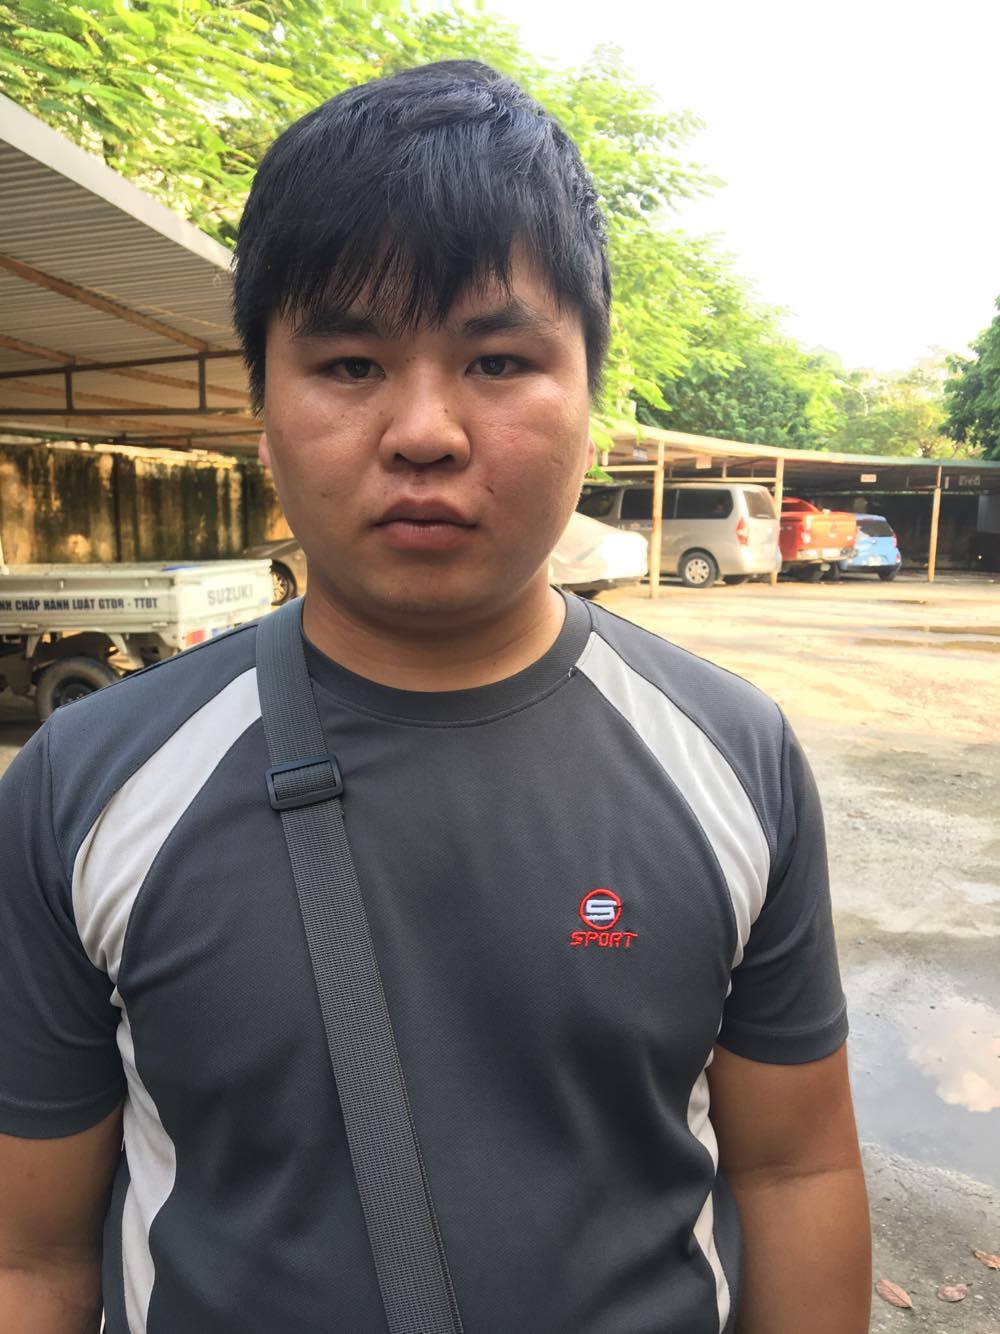 Phóng viên bị hành hung khi rời trụ sở ủy ban phường Nhật Tân, chuyển vụ việc lên Công an quận Tây Hồ